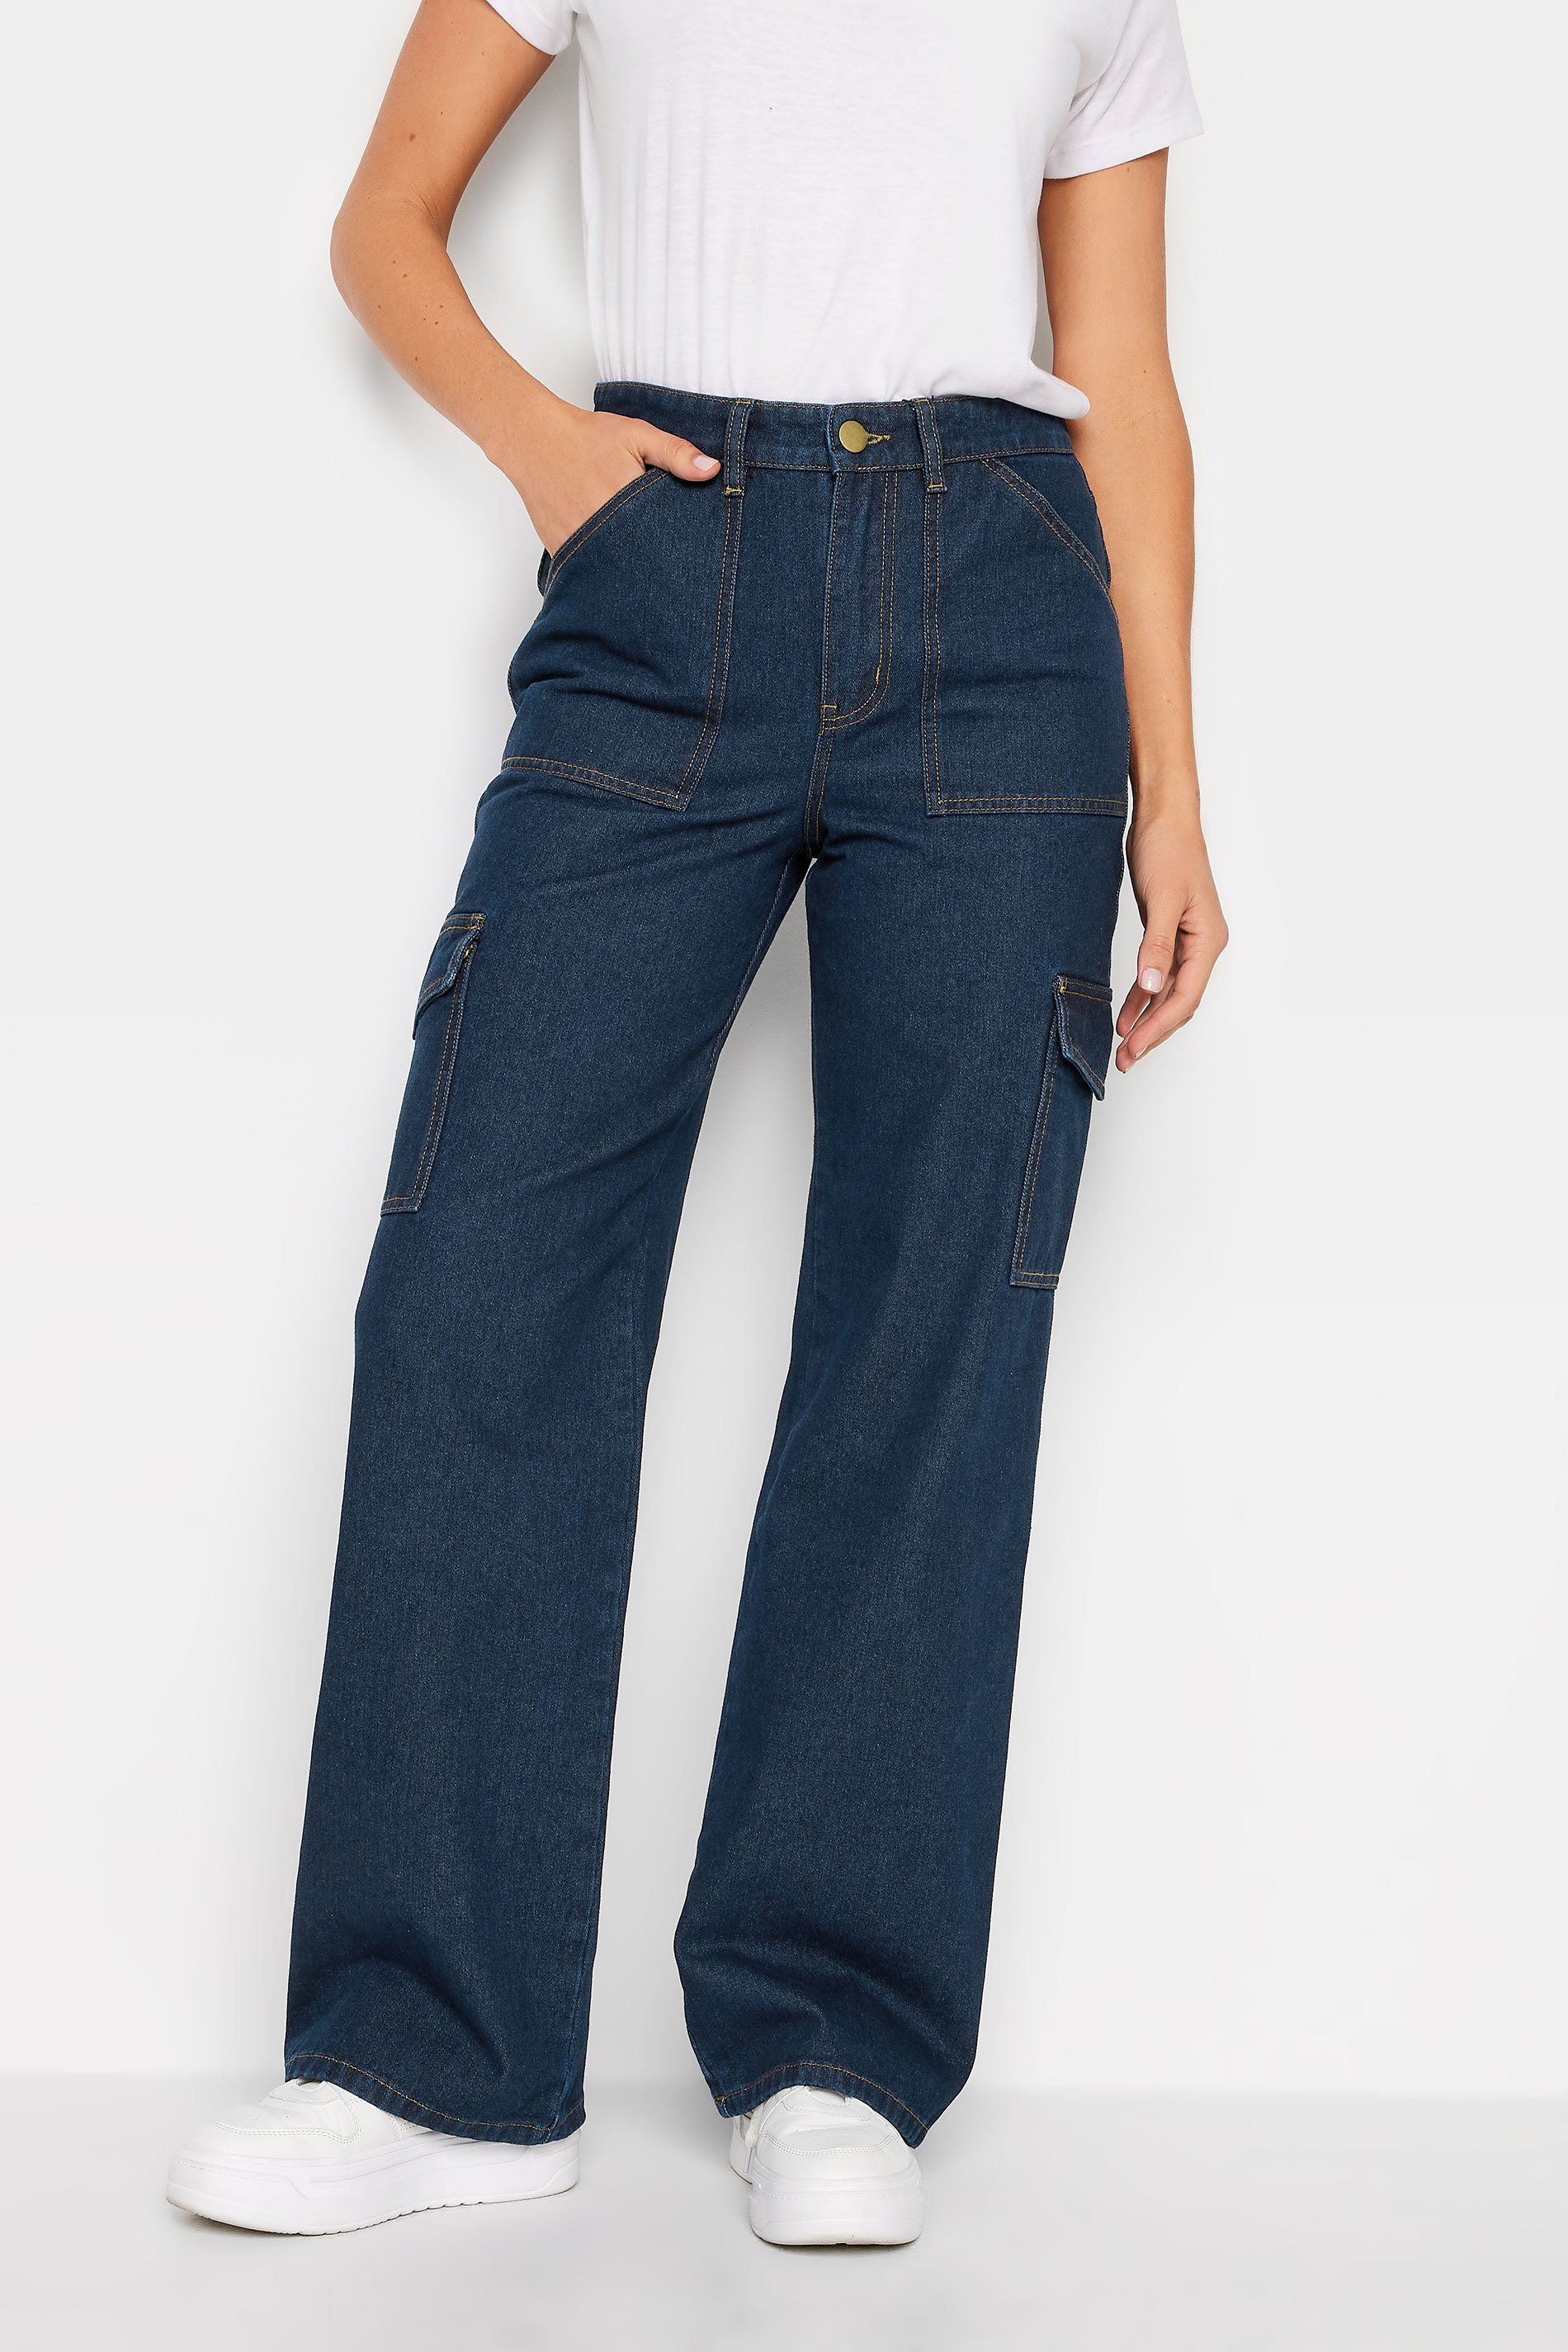 LTS Tall Womens Dark Blue Wide Leg Cargo Jeans | Long Tall Sally  2